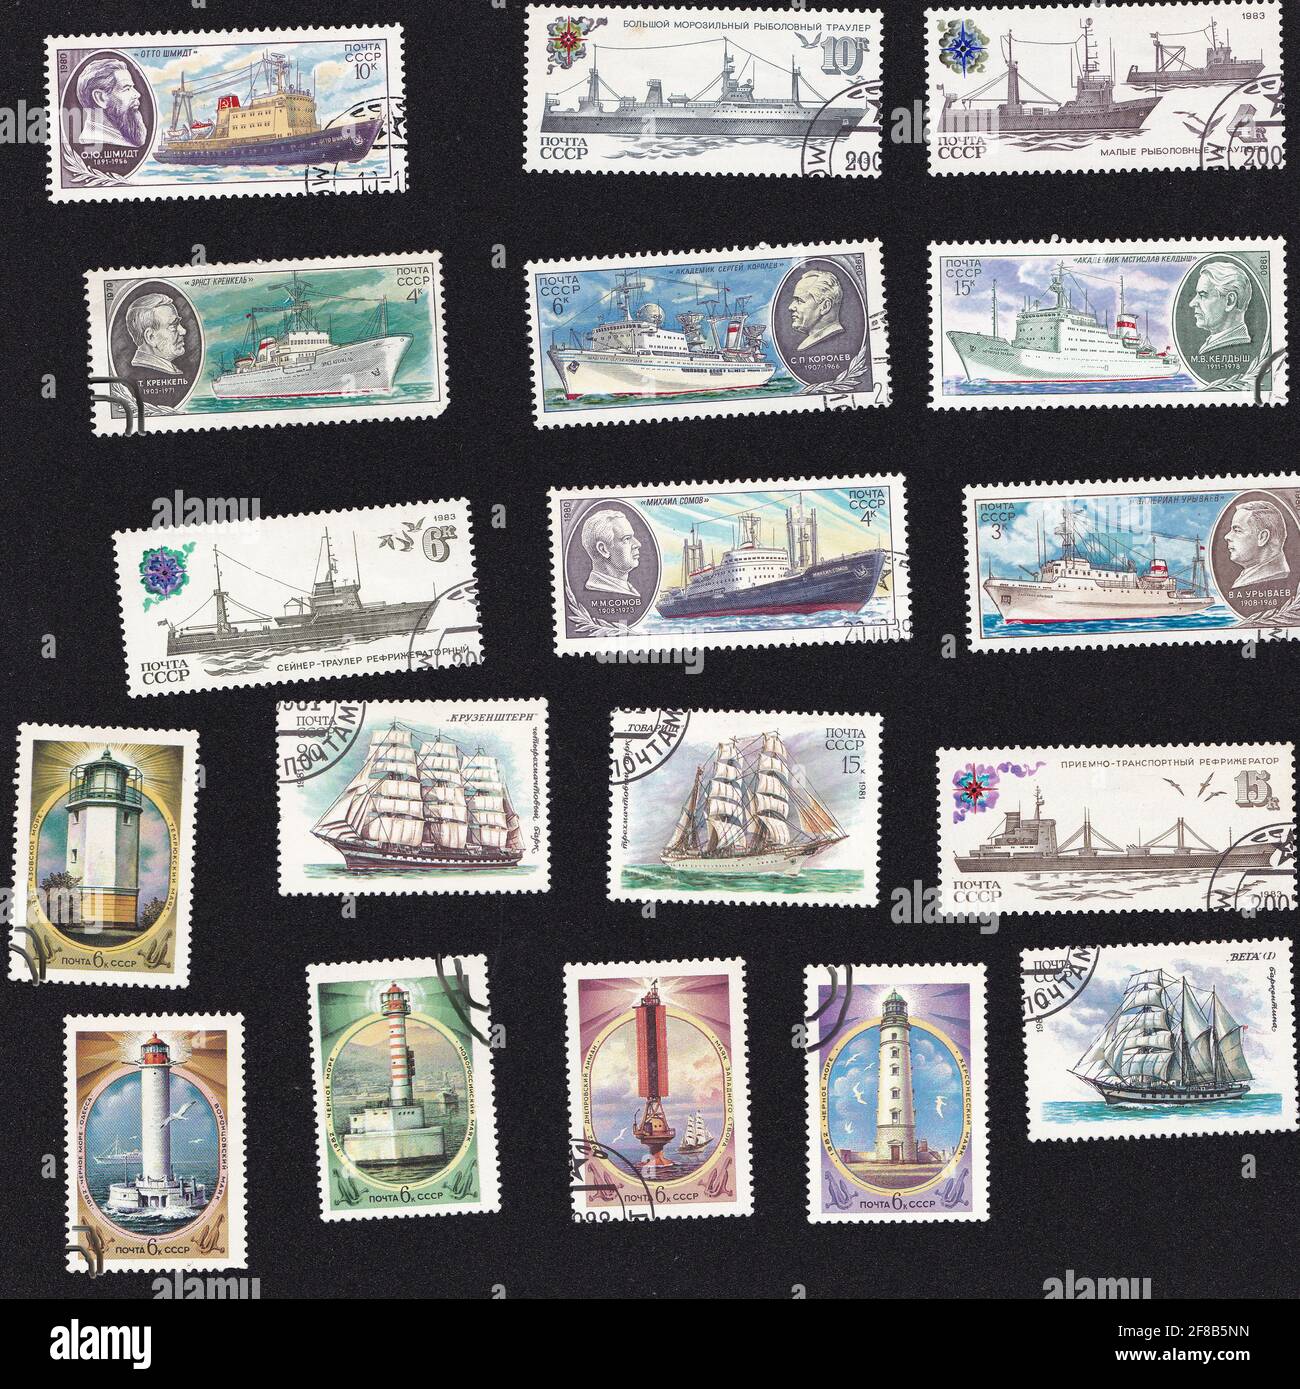 URSS - circa 1980: Una serie di francobolli. Sottomarini, navi e rompighiaccio. La nave è sul timbro. Collage con il vecchio trasporto marittimo. Disegno su un vecchio timbro. Foto Stock